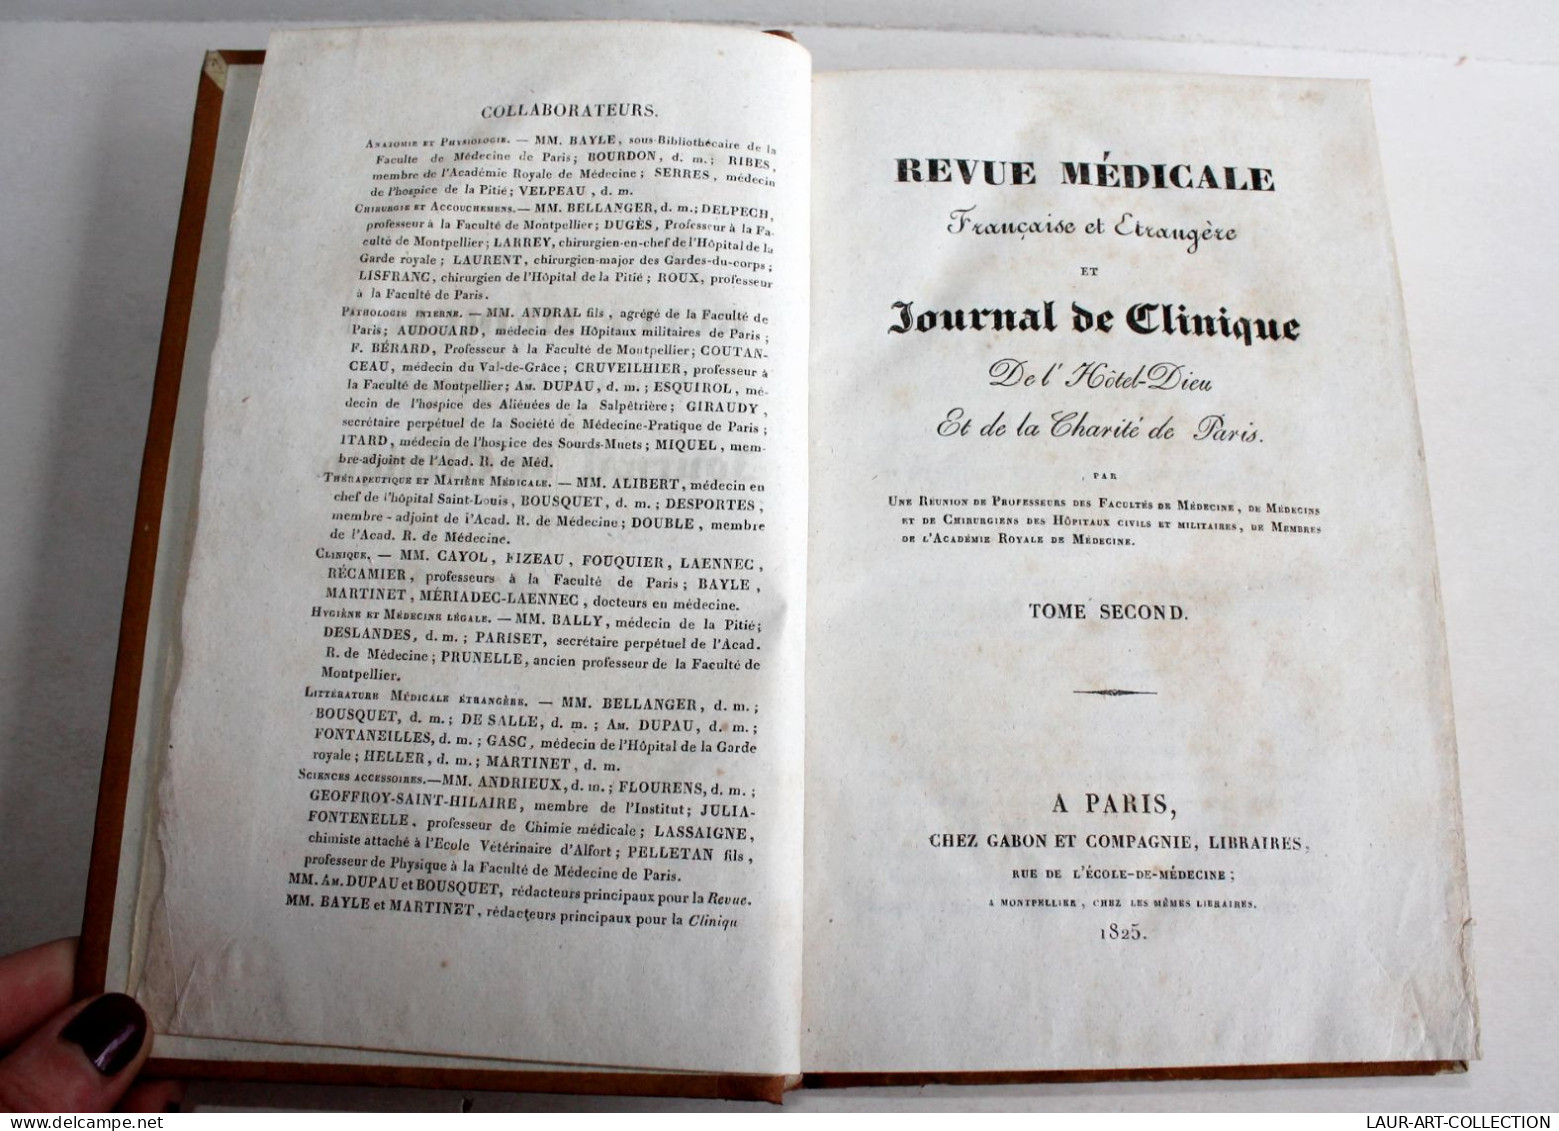 REVUE MEDICALE FRANCAISE & ETRANGERE ET JOURNAL CLINIQUE DE L'HOTEL DIEU 1825 T2 / ANCIEN LIVRE XIXe SIECLE (2603.140) - Santé